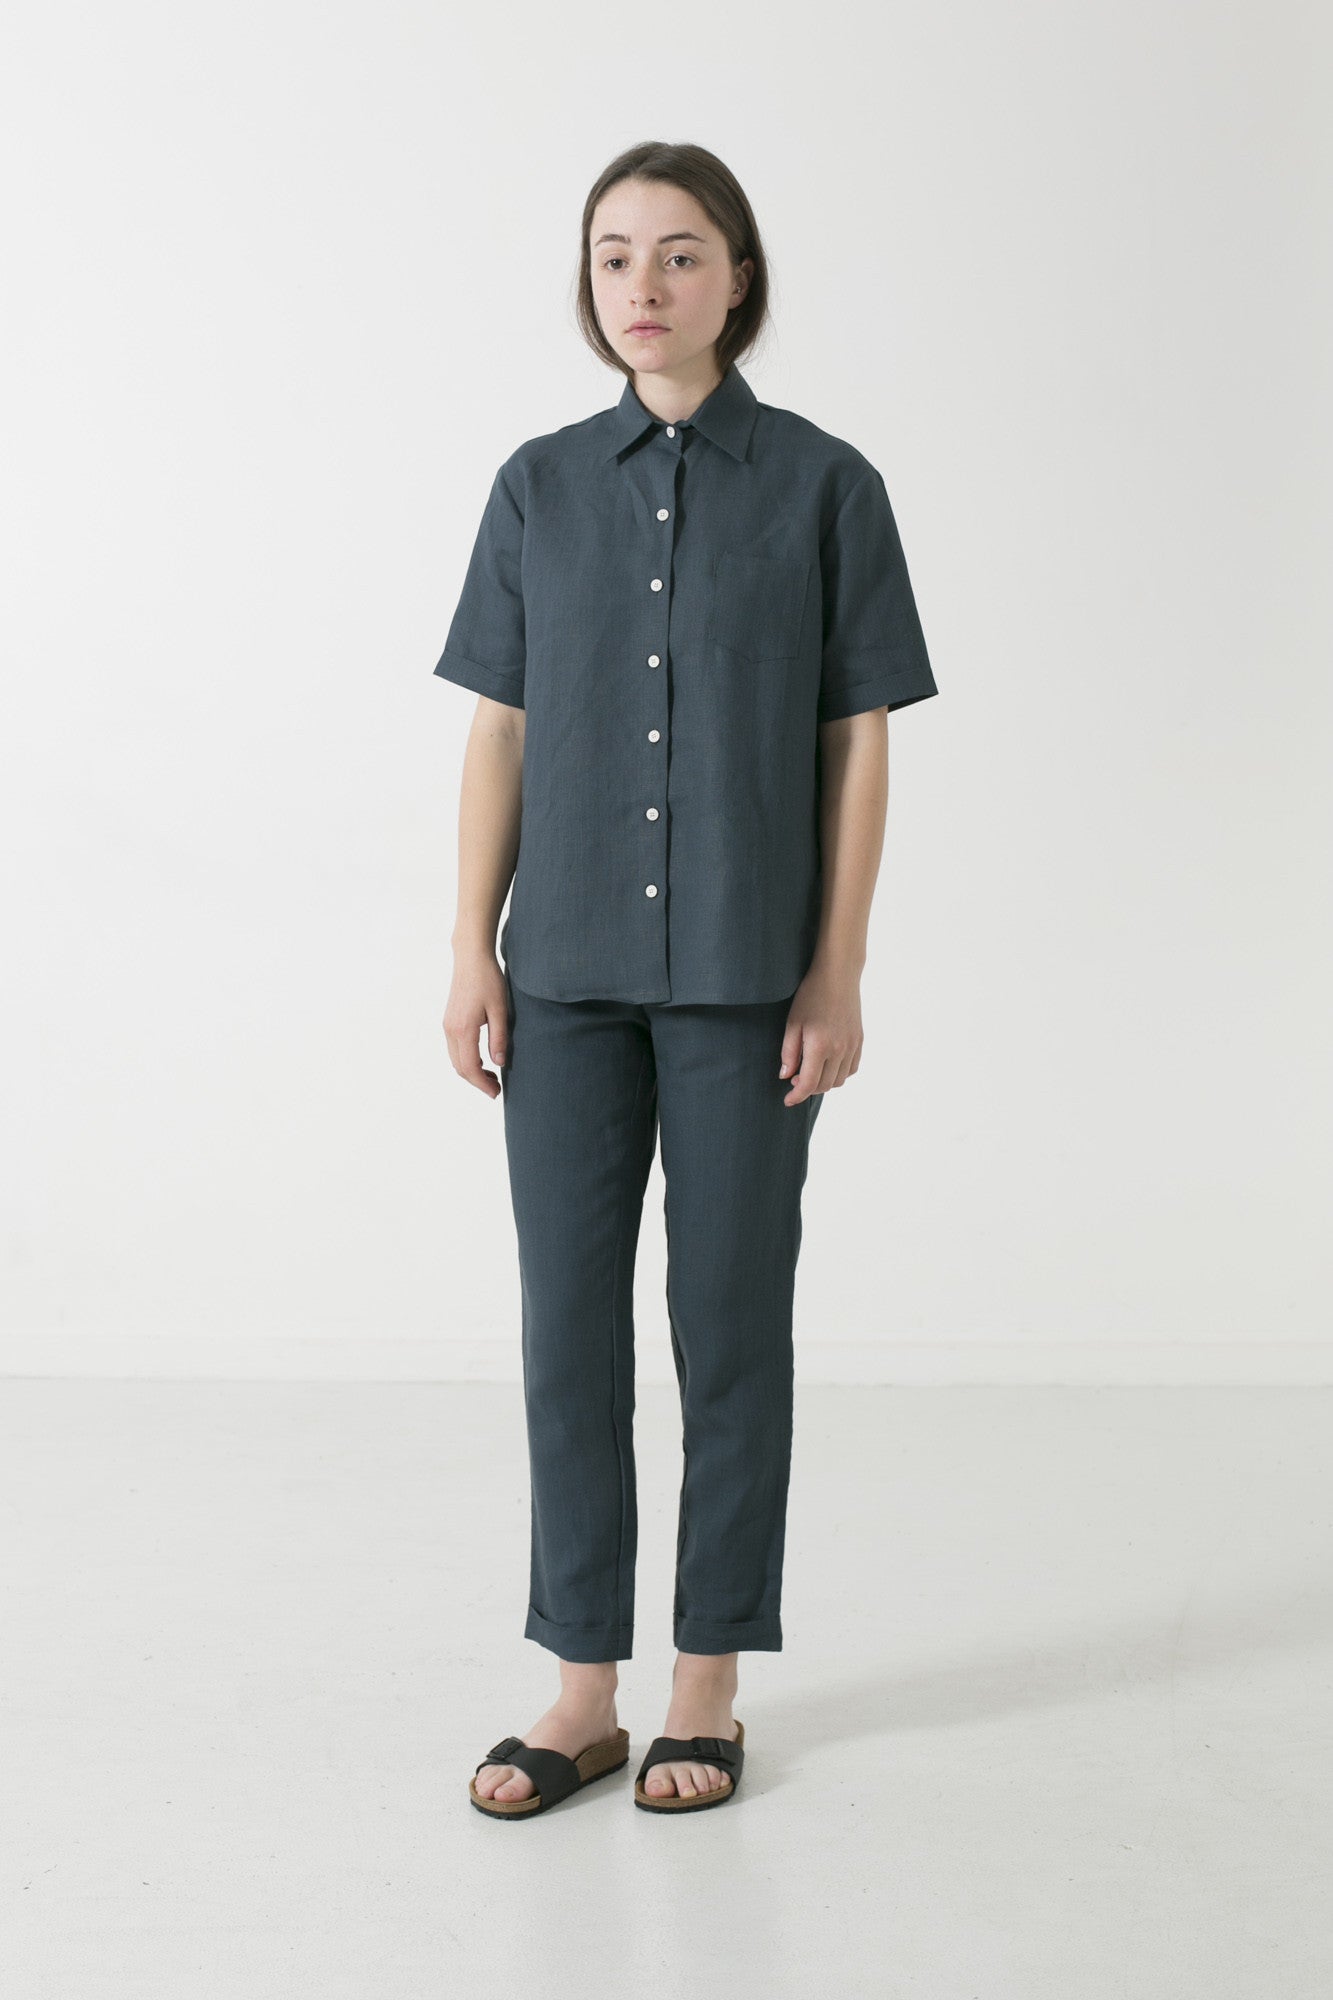 Hemp Linen Short Sleeve Travel Shirt - Ensemble Studios